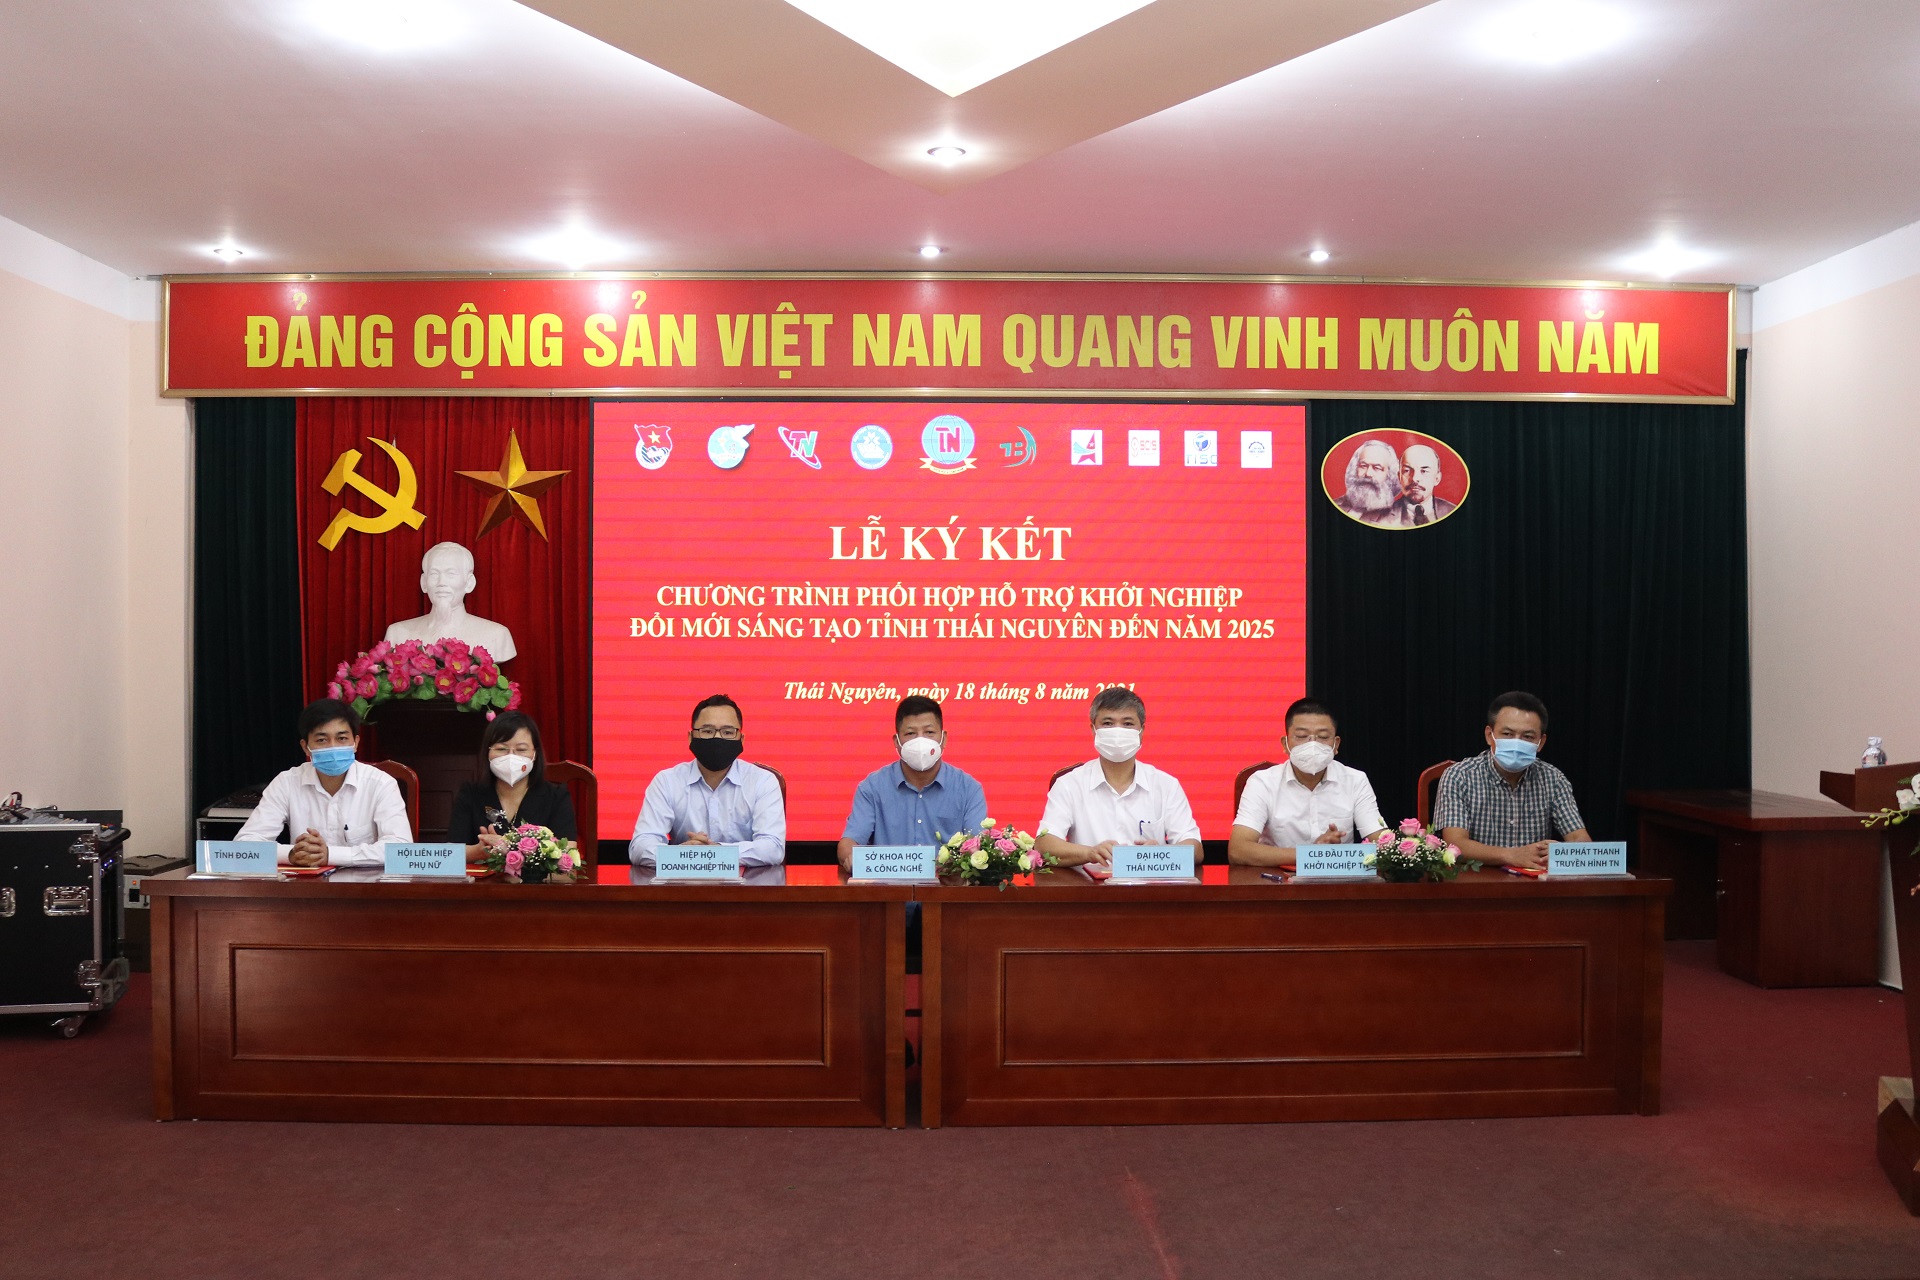 Lễ Ký kết - Chương trình phối hợp hỗ trợ khởi nghiệp ĐMST tỉnh Thái Nguyên